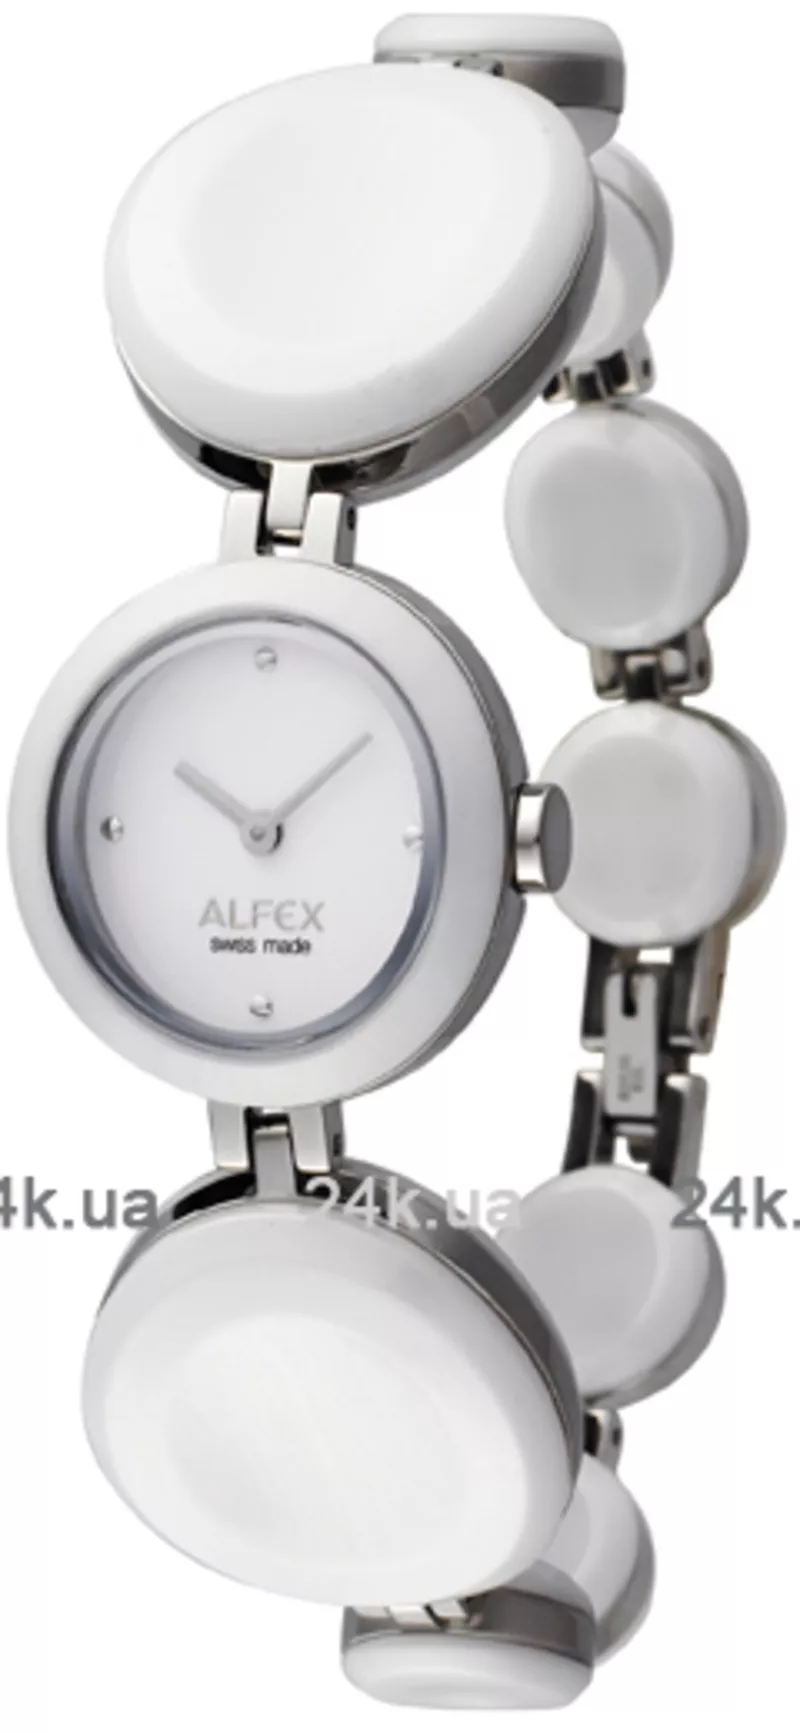 Часы Alfex 5740/905